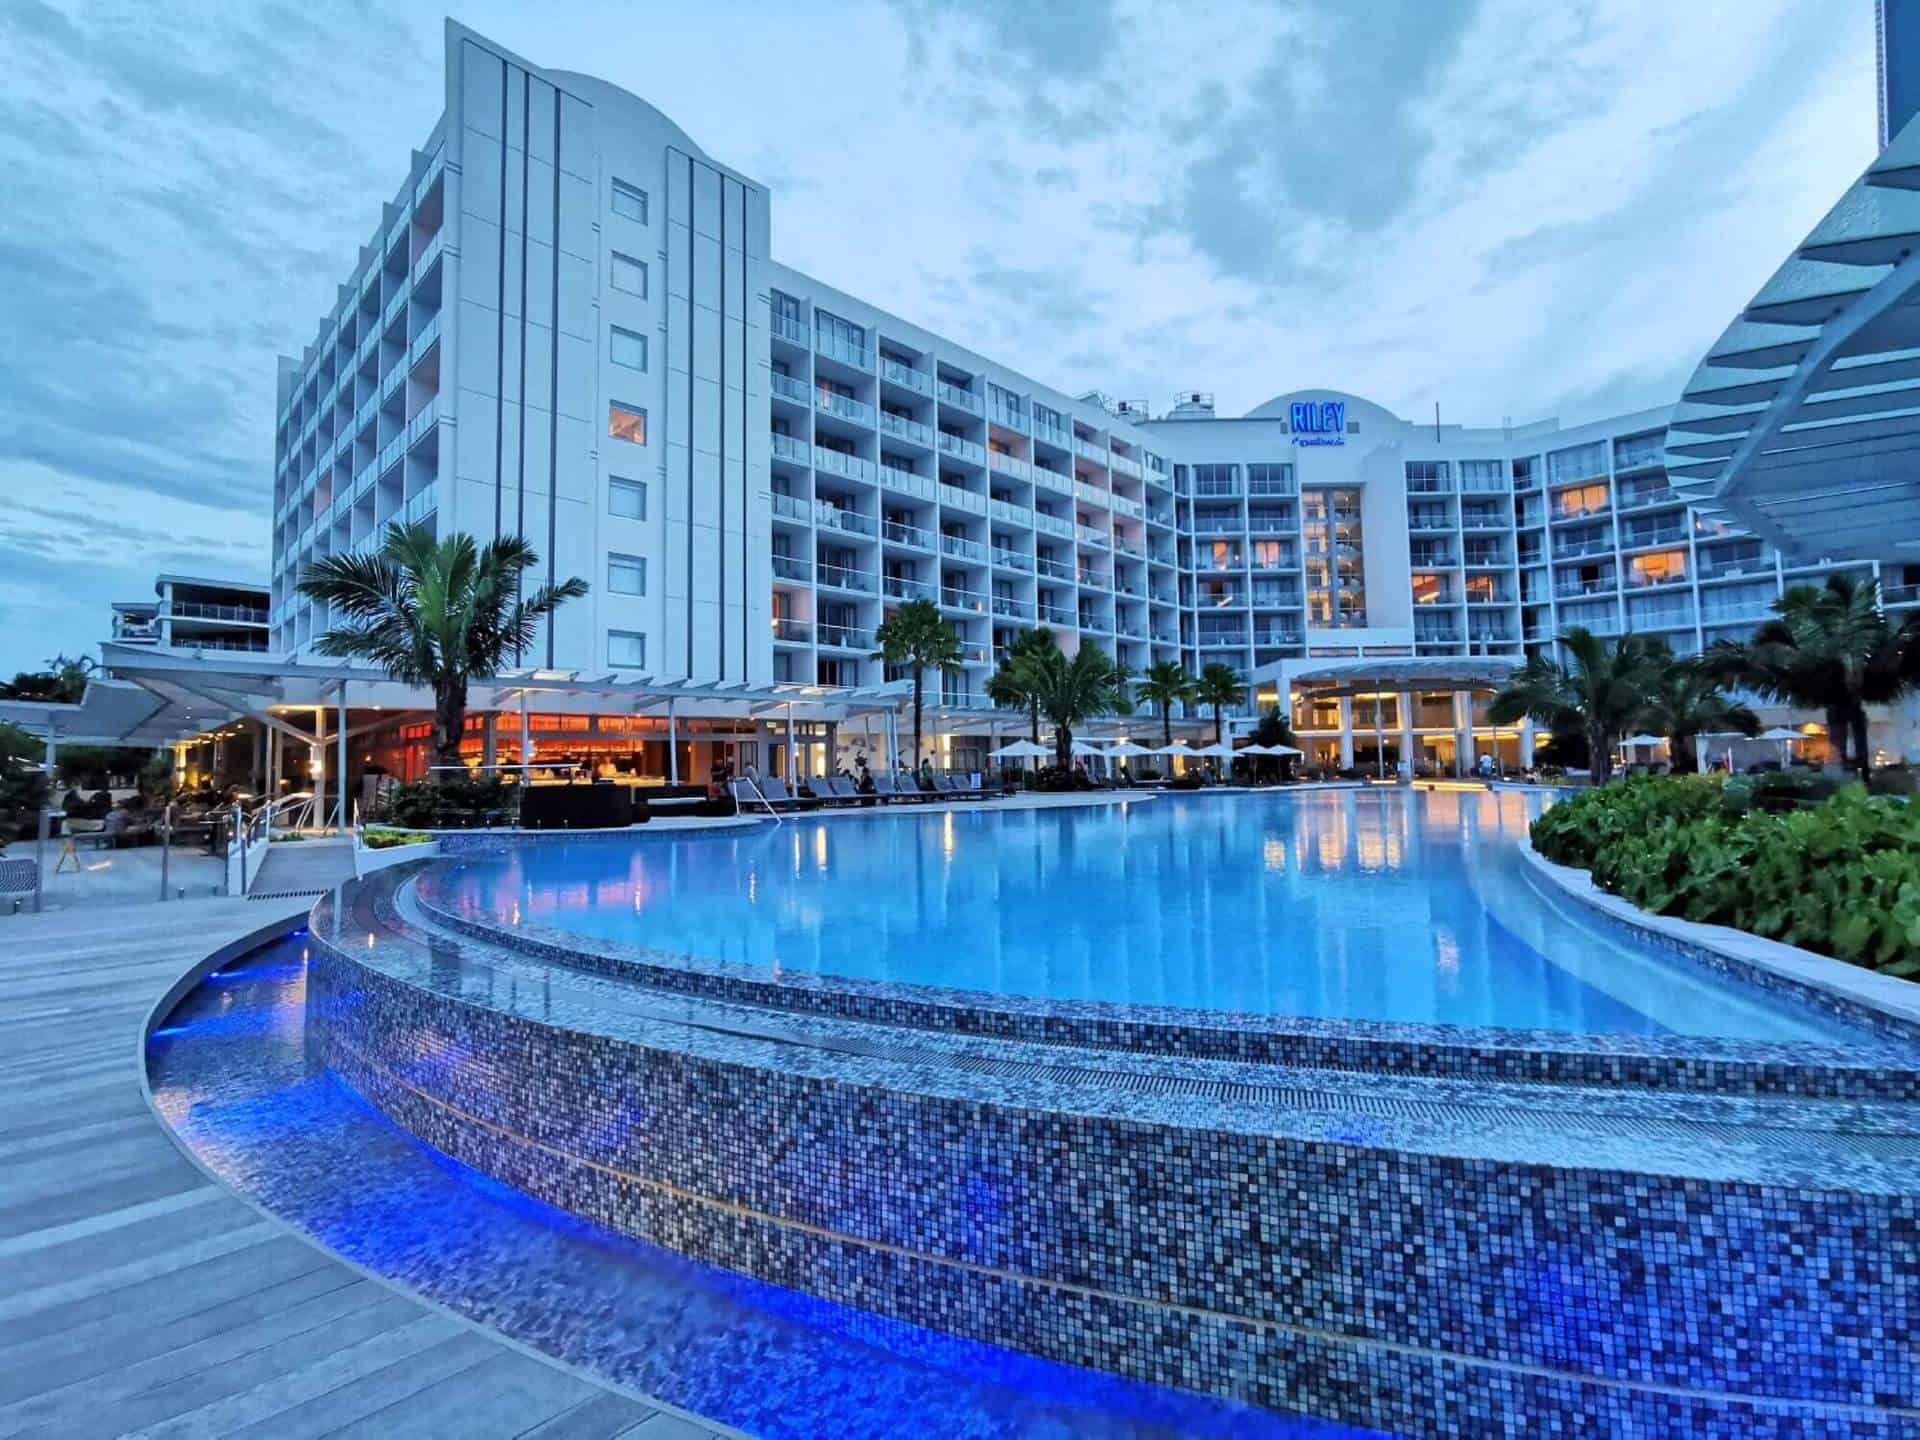 Riley Hotel's pool in Cairns // Travel Mermaid 